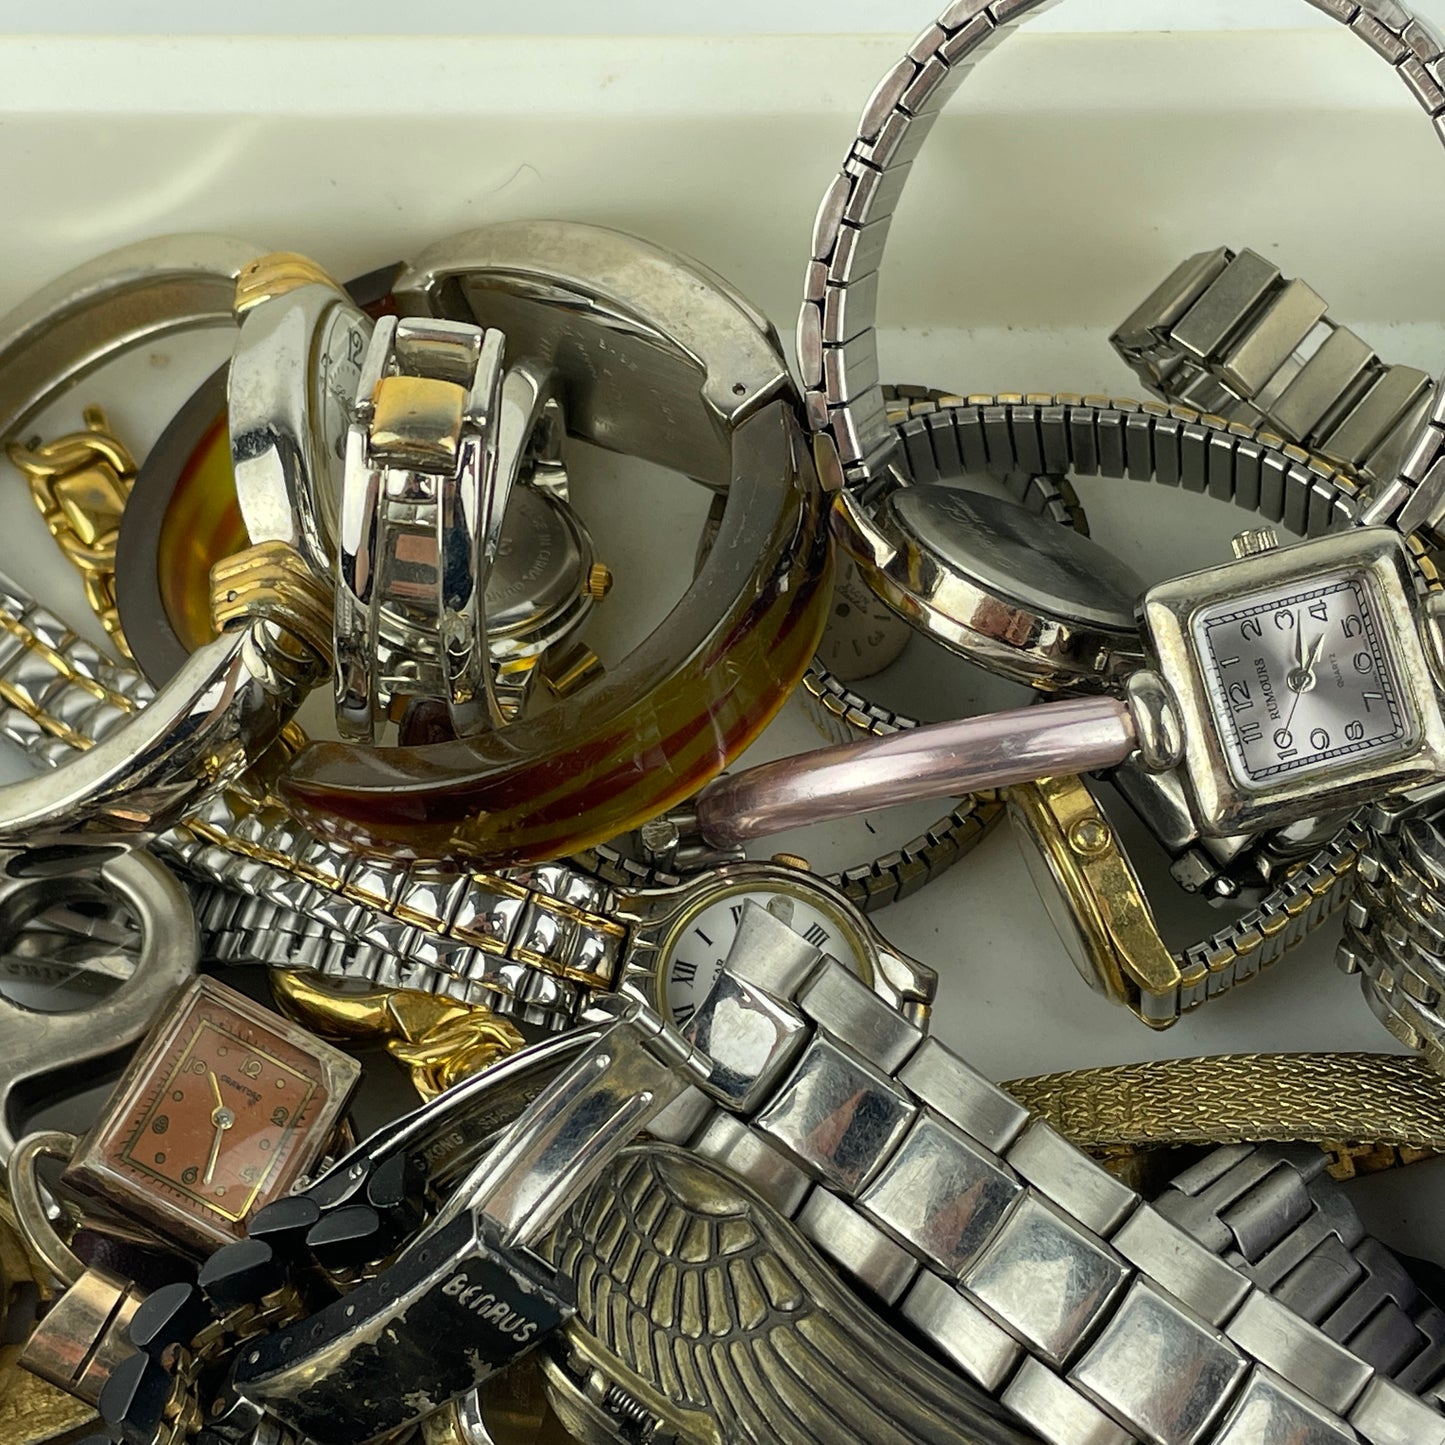 Lot 87- Large Selection of Quartz Wristwatches